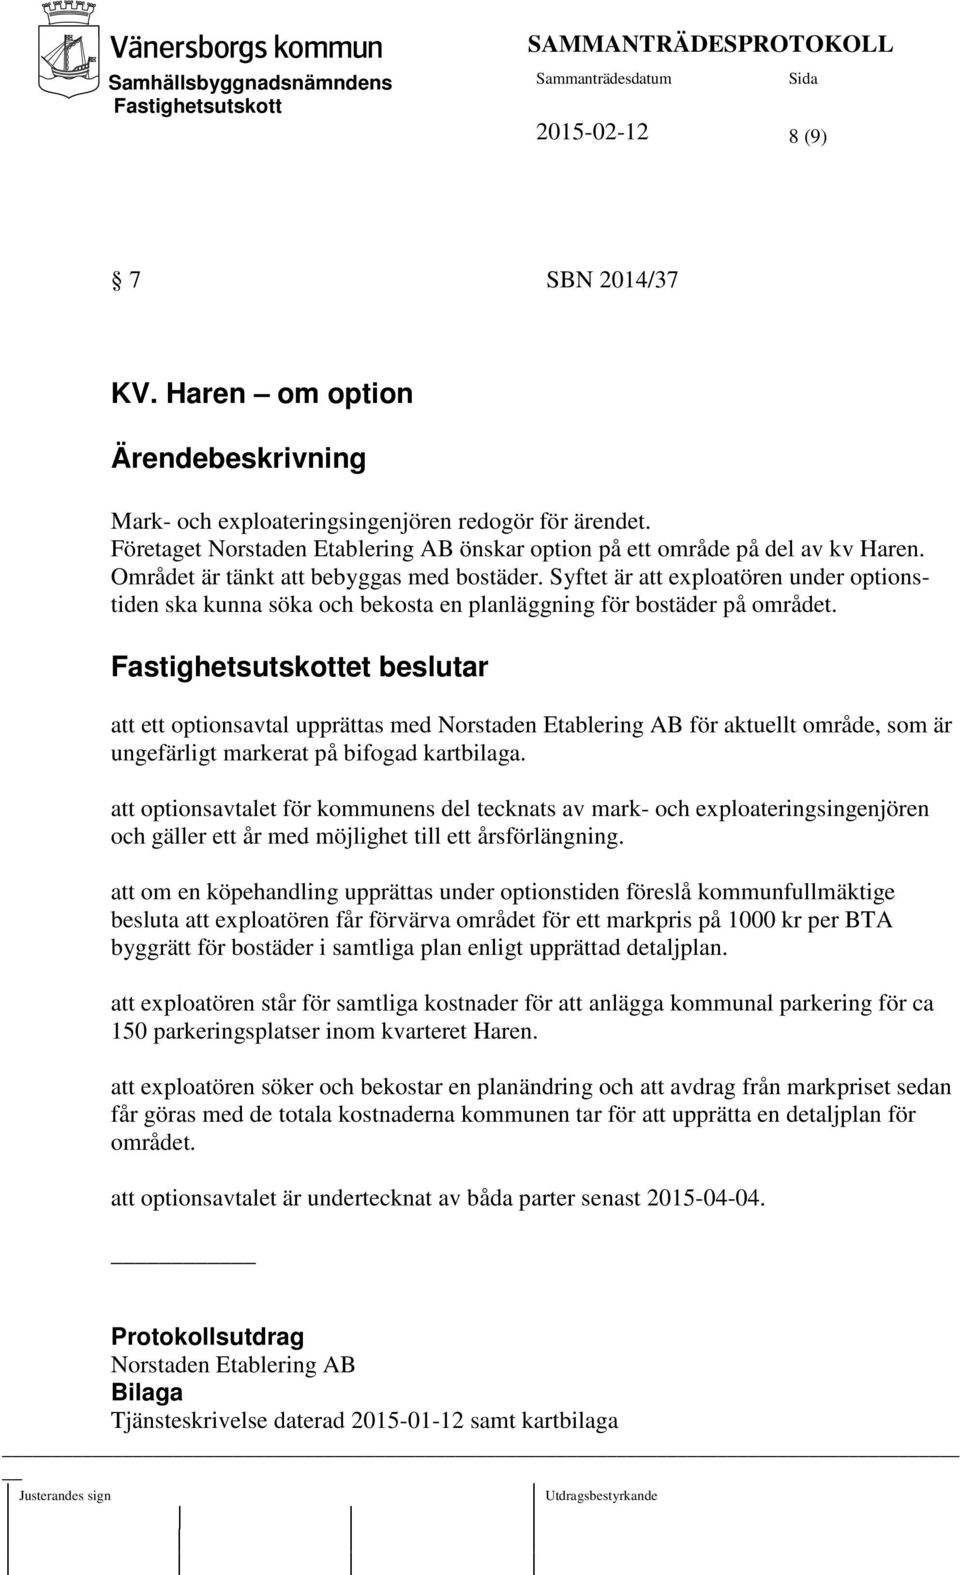 et beslutar att ett optionsavtal upprättas med Norstaden Etablering AB för aktuellt område, som är ungefärligt markerat på bifogad kartbilaga.